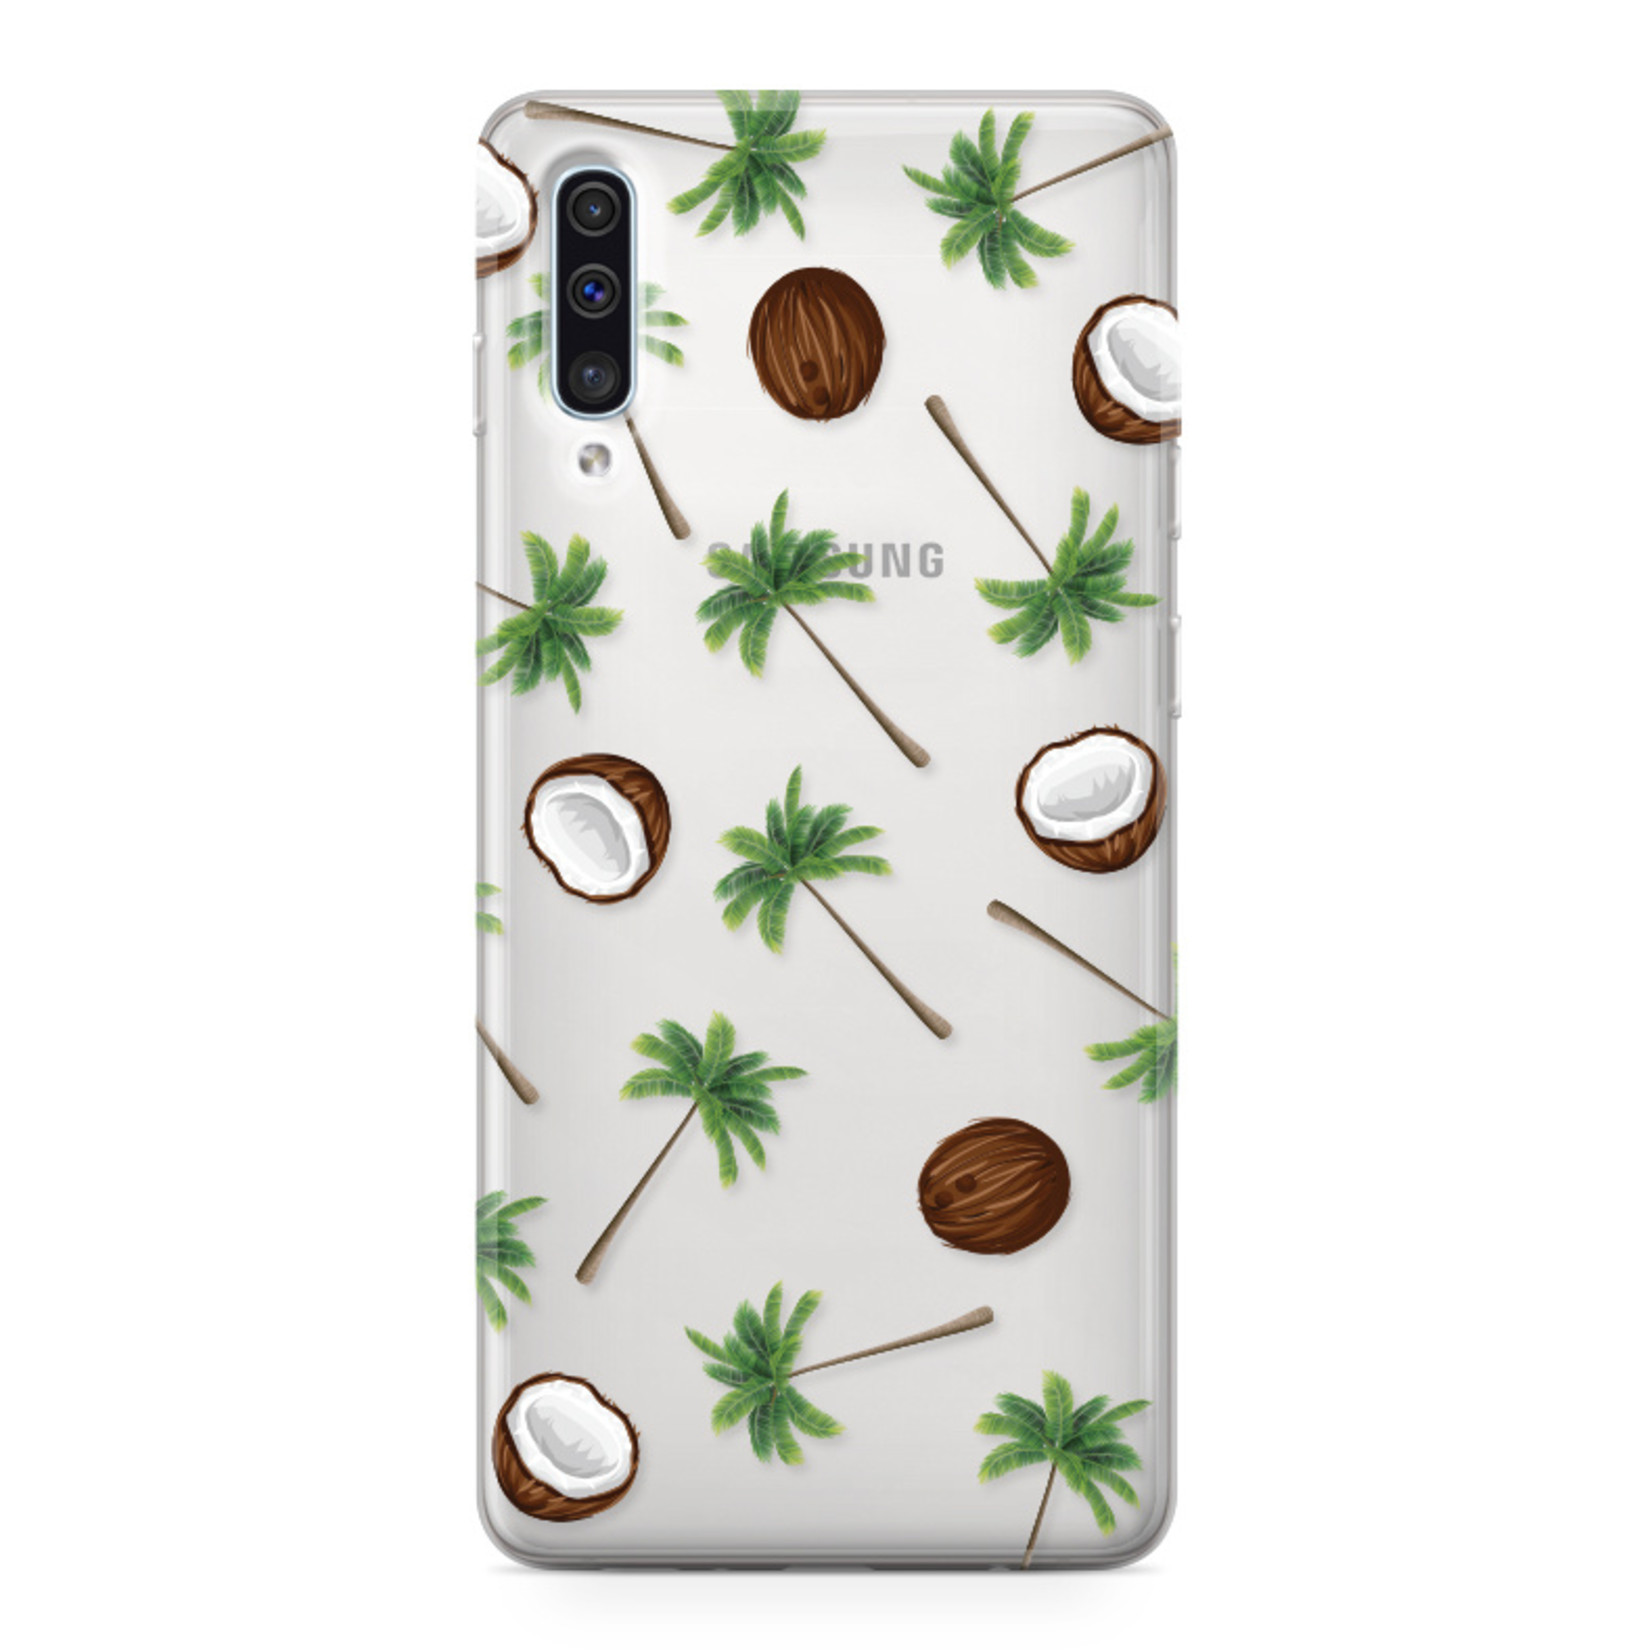 FOONCASE Samsung Galaxy A50 Cover - Coco Paradise